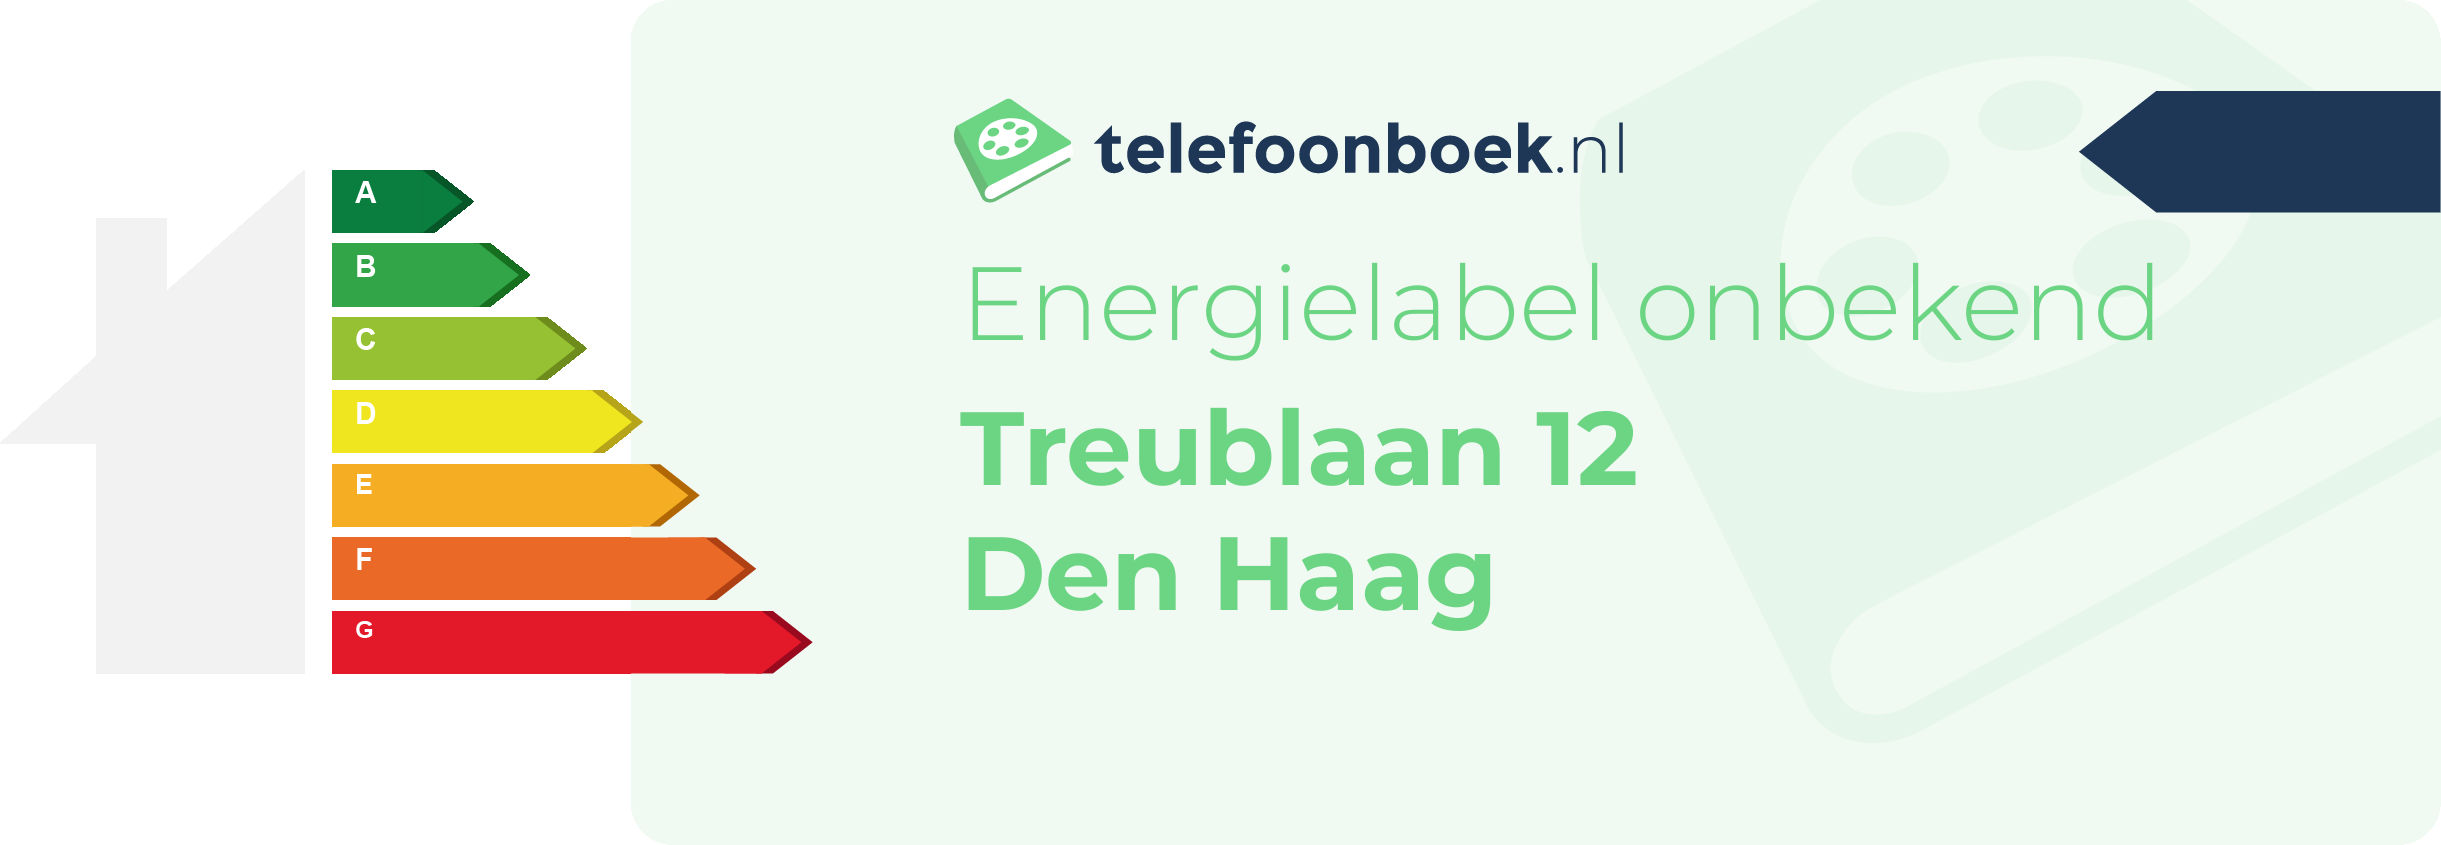 Energielabel Treublaan 12 Den Haag